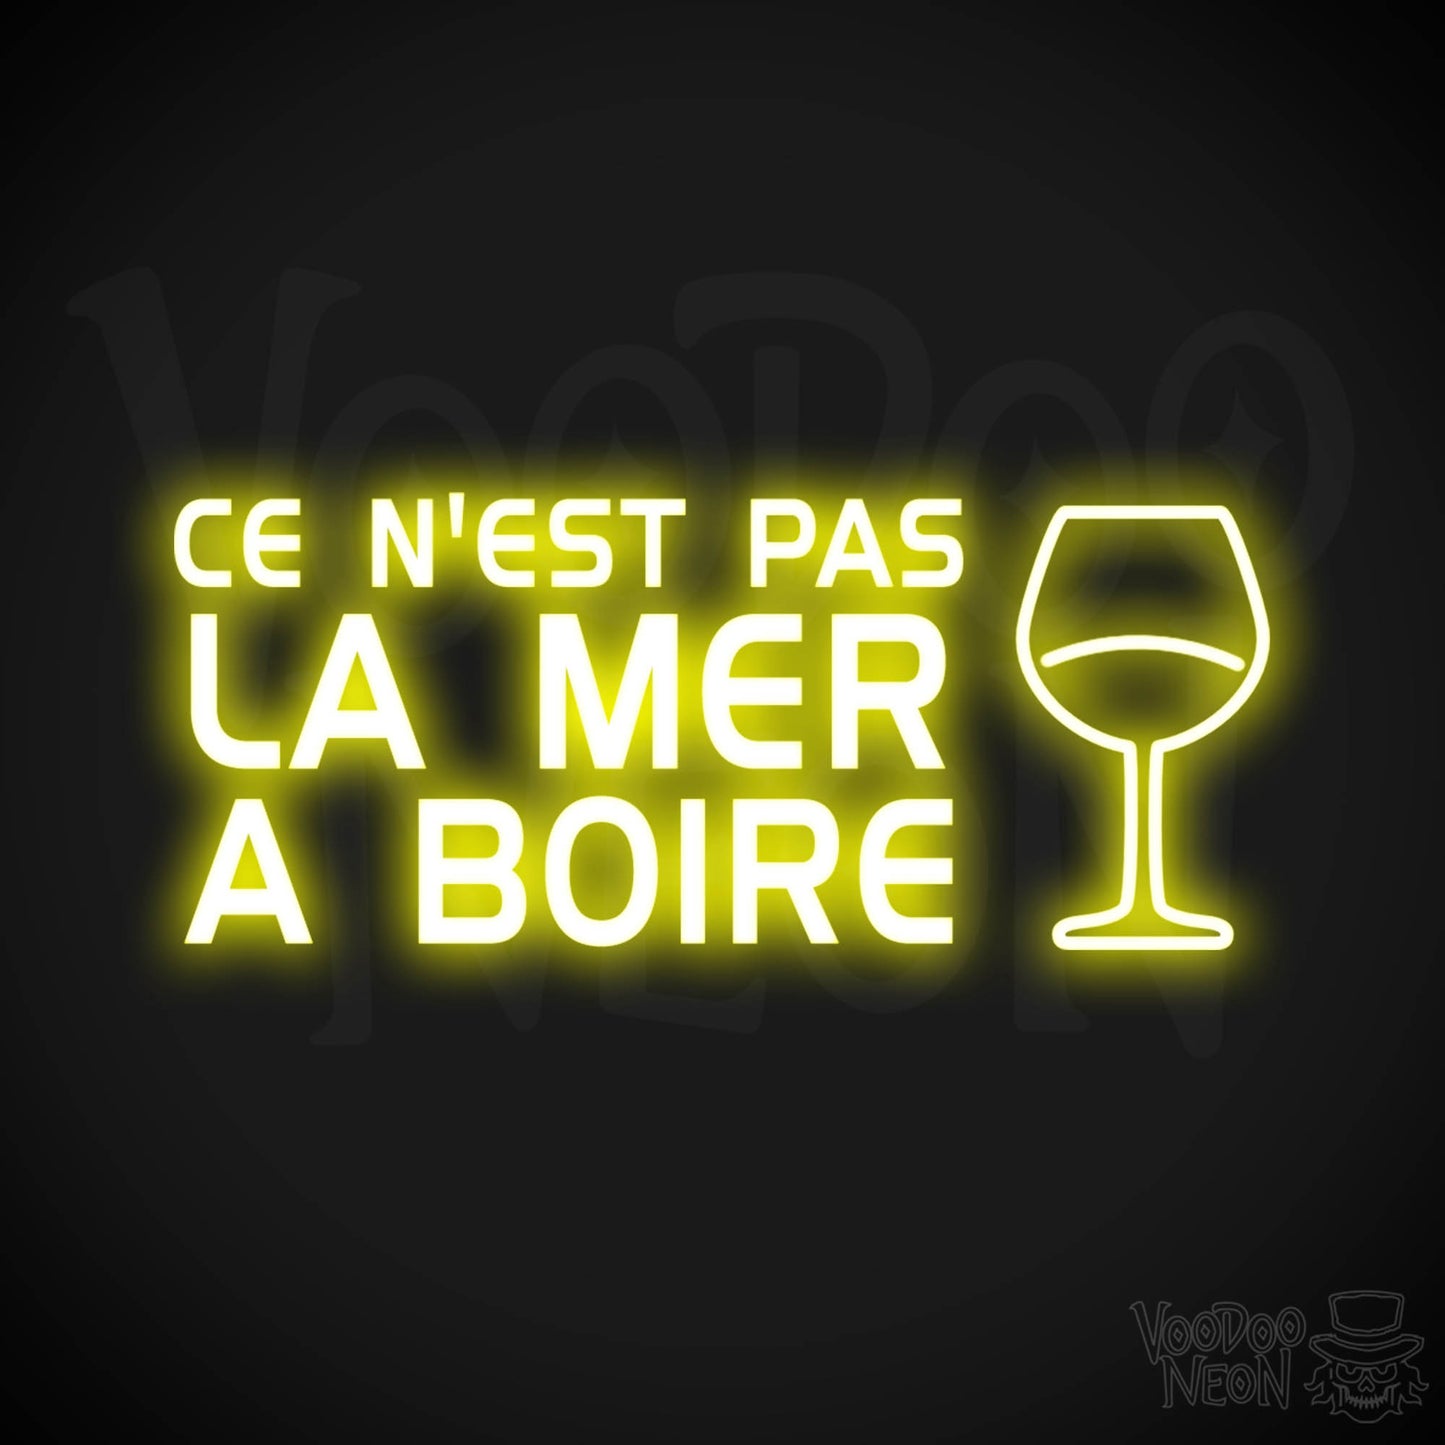 Ce N'est Pas La Mer a Boire Neon Sign - LED Lights - Color Yellow